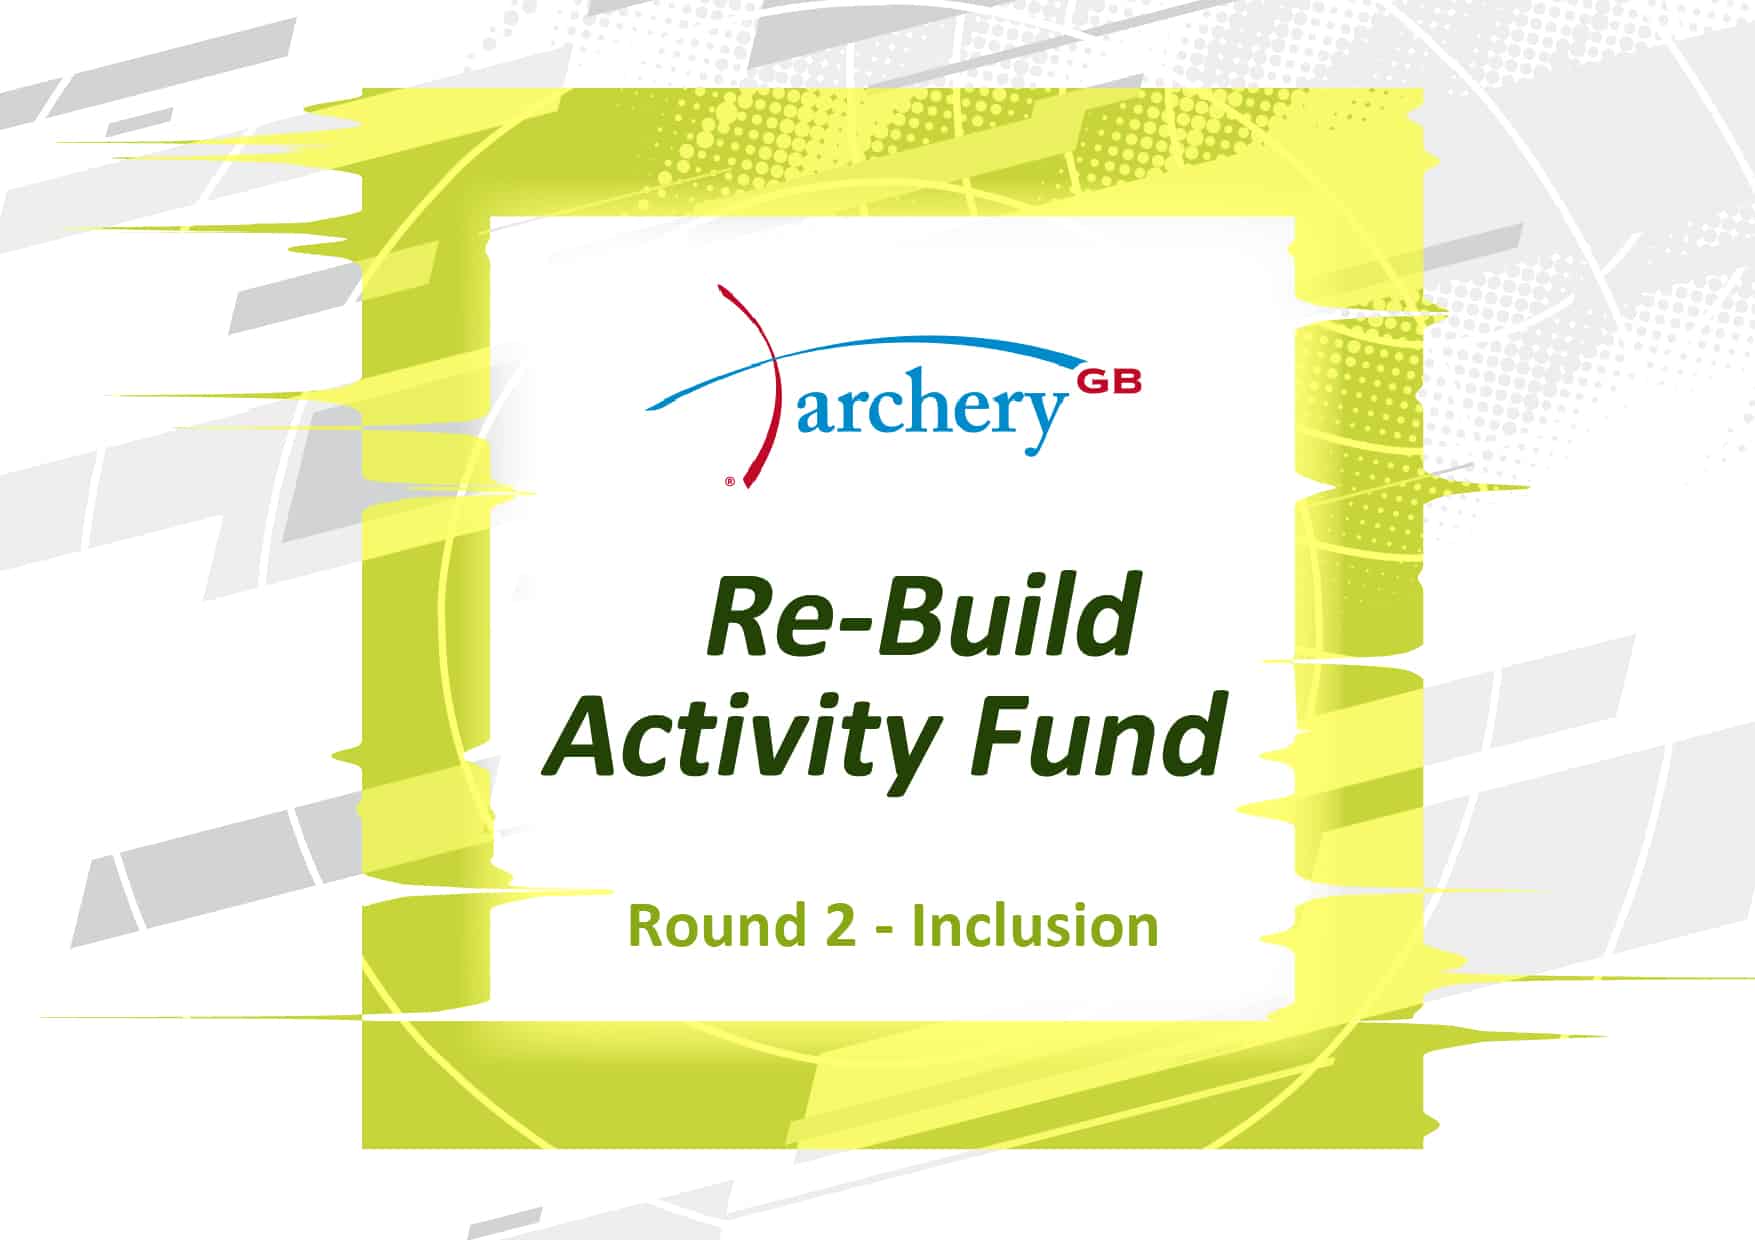 Archery GB Rebuild Activity Fund Round 2